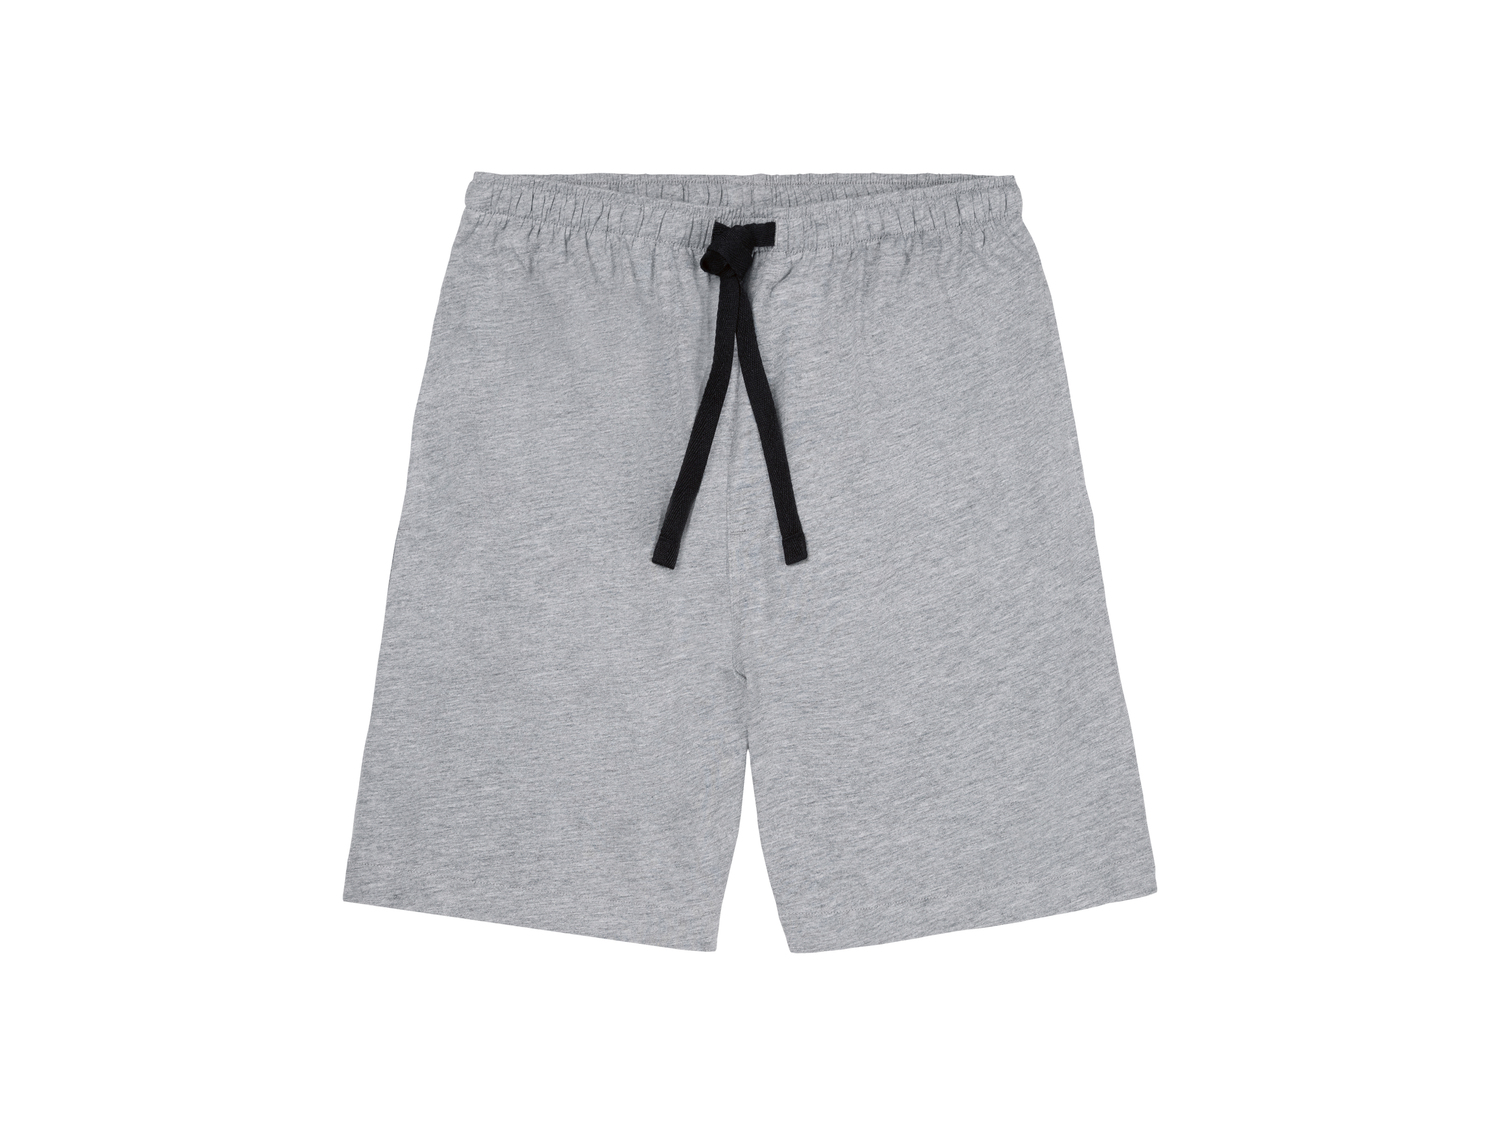 Shorts pigiama da uomo Livergy, prezzo 3.99 € 
Misure: S-XL
Taglie disponibili

Caratteristiche

- ...